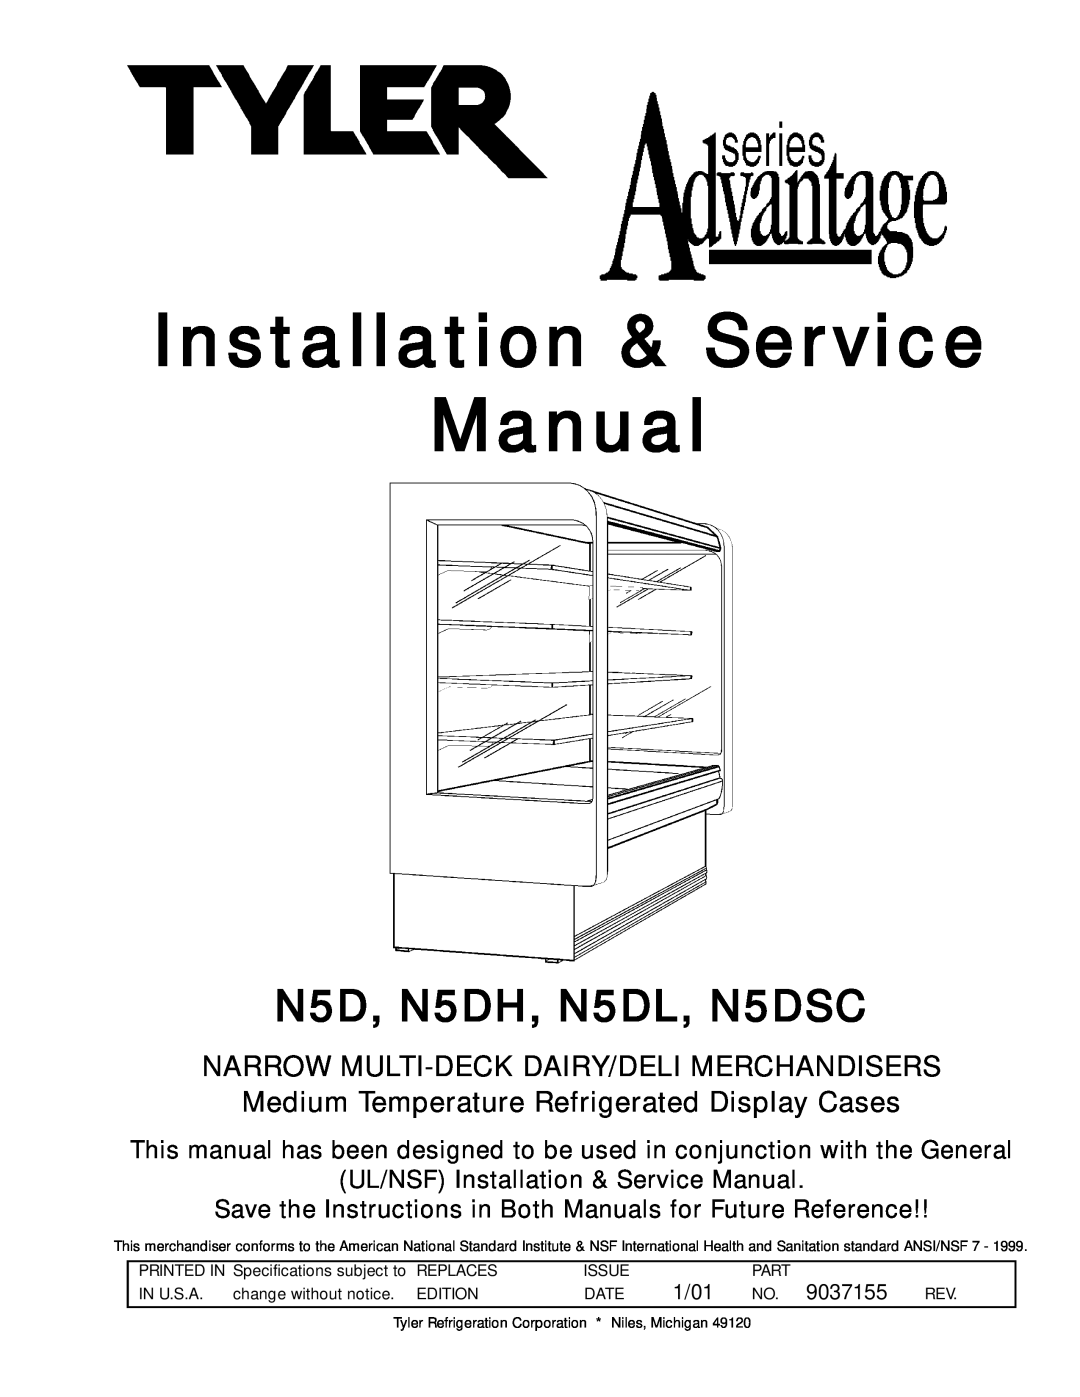 Tyler Refrigeration service manual Narrow Multi-Deckdairy/Deli Merchandisers, N5D, N5DH, N5DL, N5DSC 